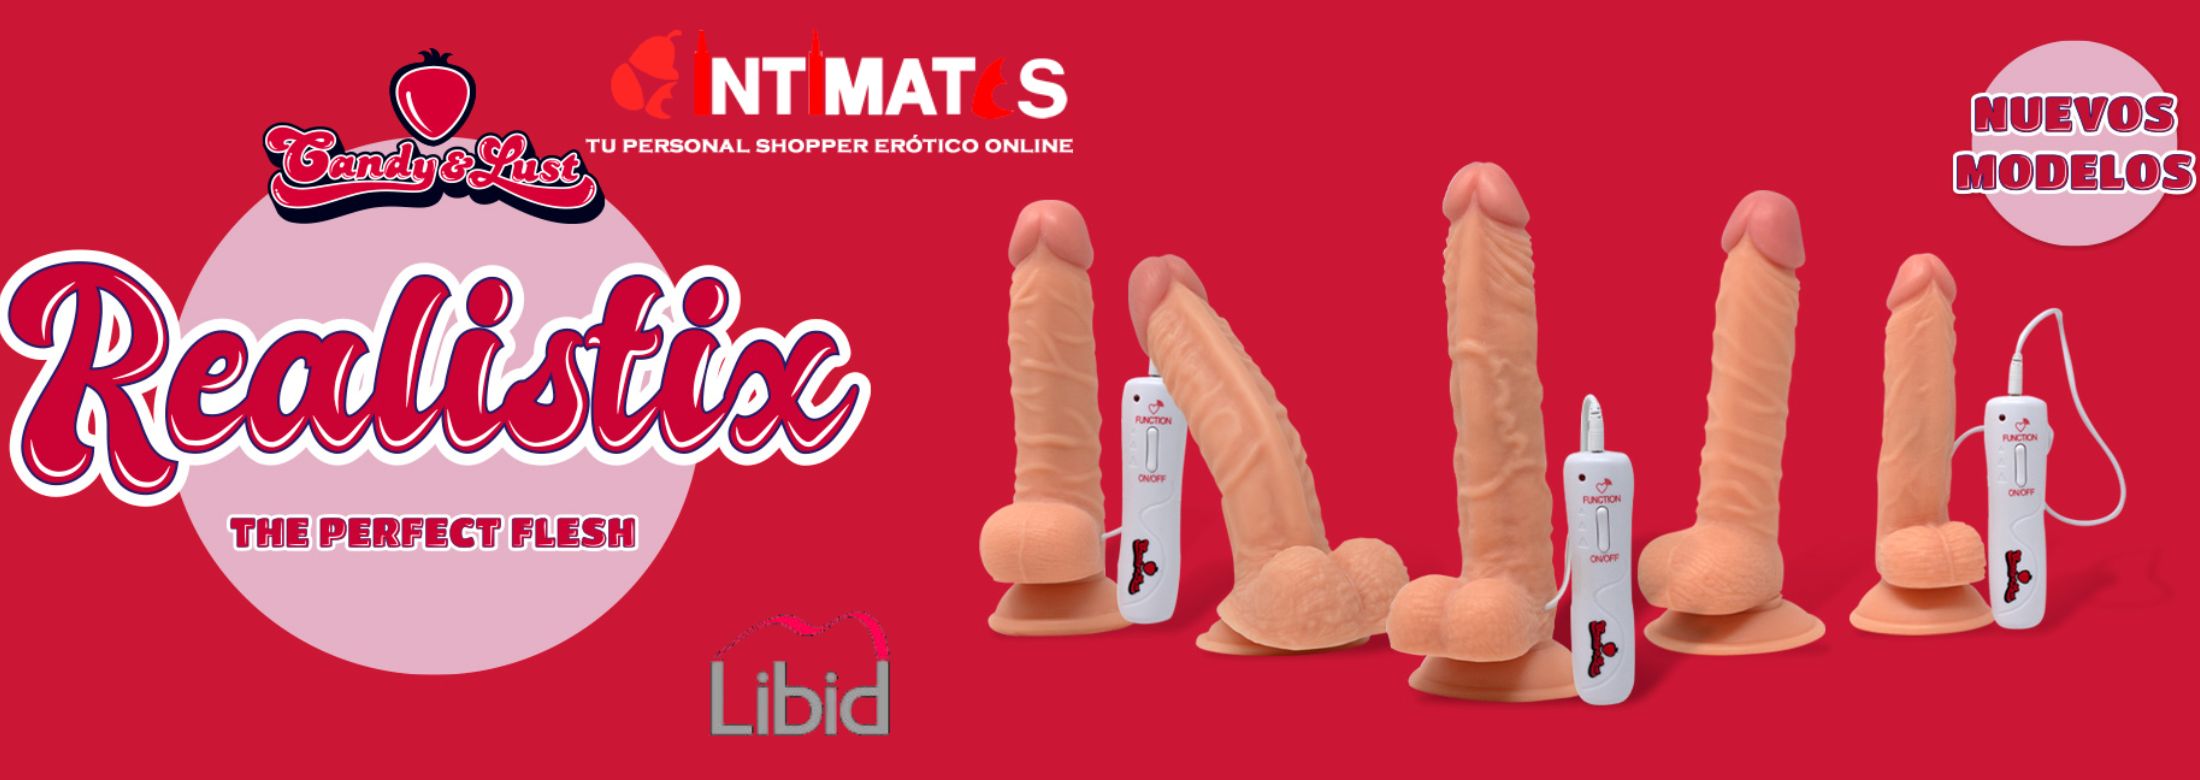 Libid Toys solo está disponible para las mejores tiendas Eróticas del mundo como intimates.es "Tu Personal Shopper Online" 